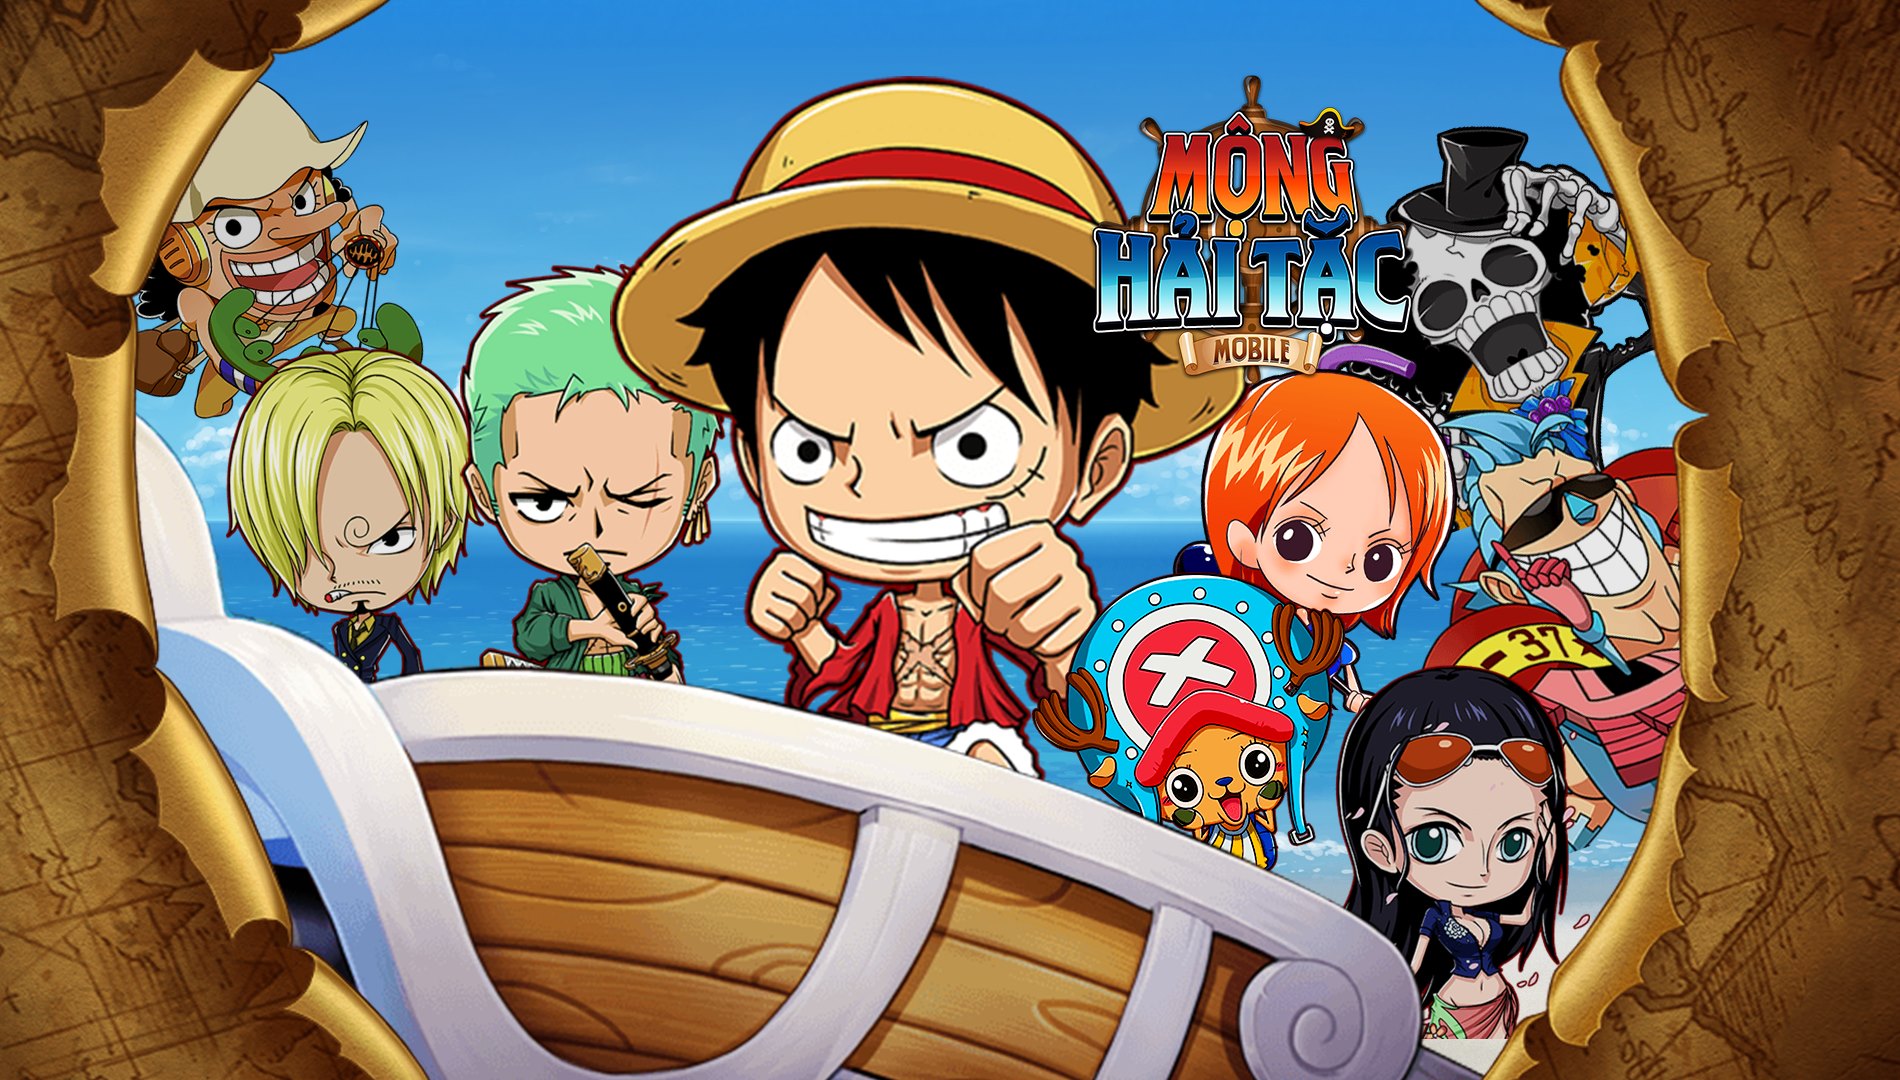 Mộng Hải Tặc Mobile là một game giải đố độc đáo và thú vị, lấy bối cảnh trong thế giới hải tặc của One Piece. Bạn sẽ được nhập vai vào nhân vật yêu thích của mình, tham gia những cuộc phiêu lưu đầy mạo hiểm và tính toán để tìm kiếm kho báu One Piece. Hãy trải nghiệm cảm giác hồi hộp và kịch tính của Mộng Hải Tặc Mobile và khám phá những bí ẩn trong thế giới One Piece.